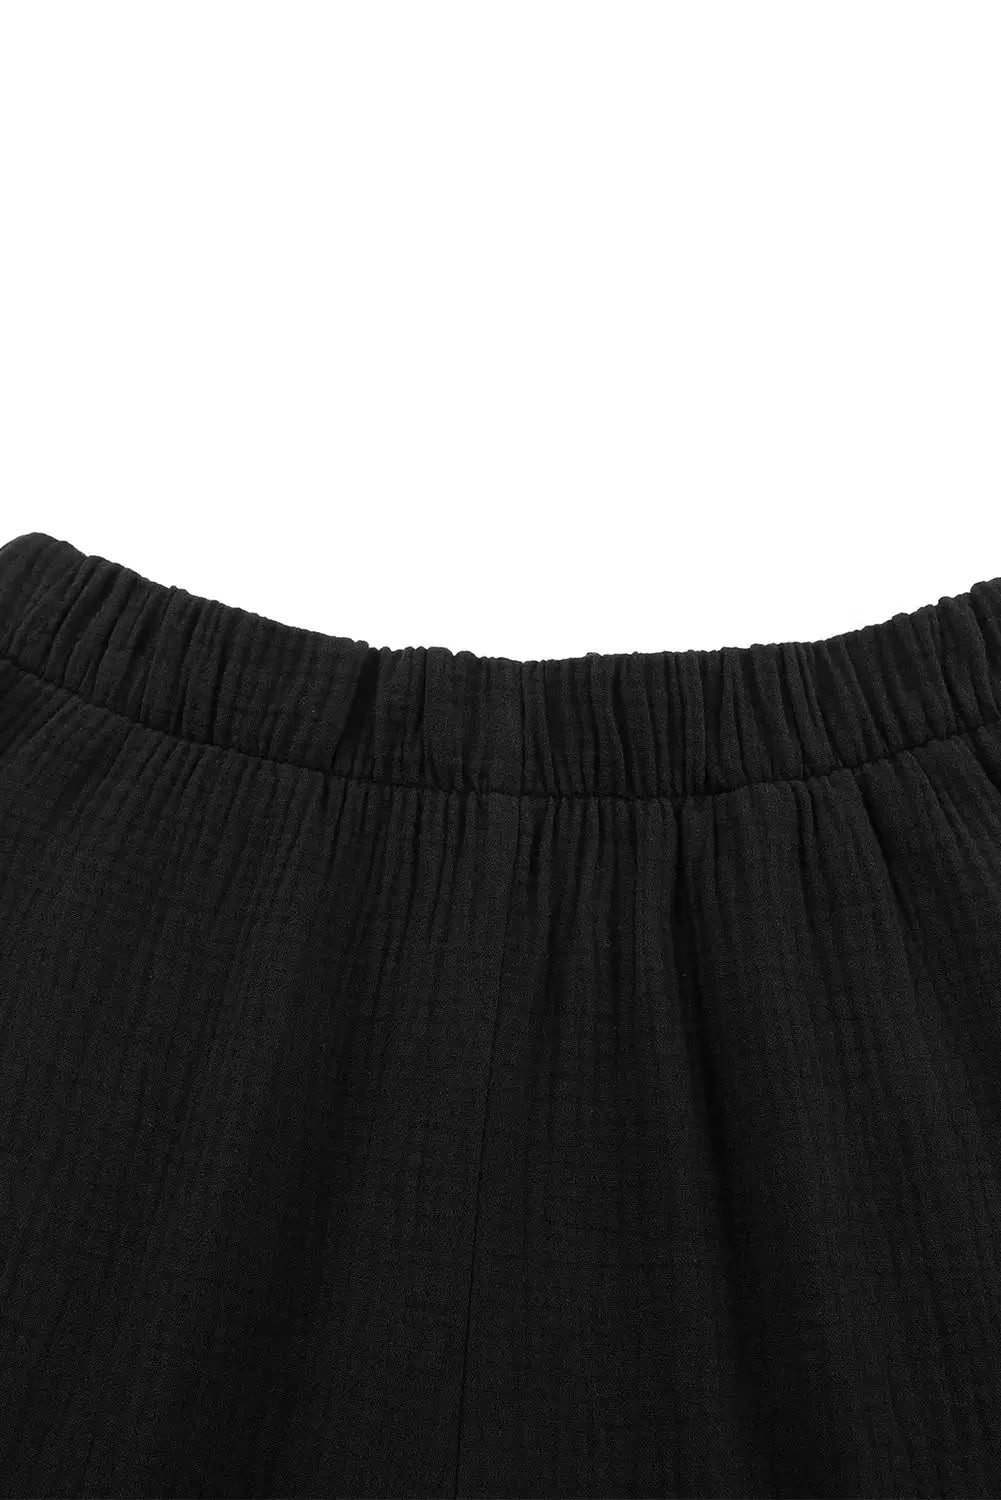 Black textured high waist ruffled bell bottom pants - wide leg